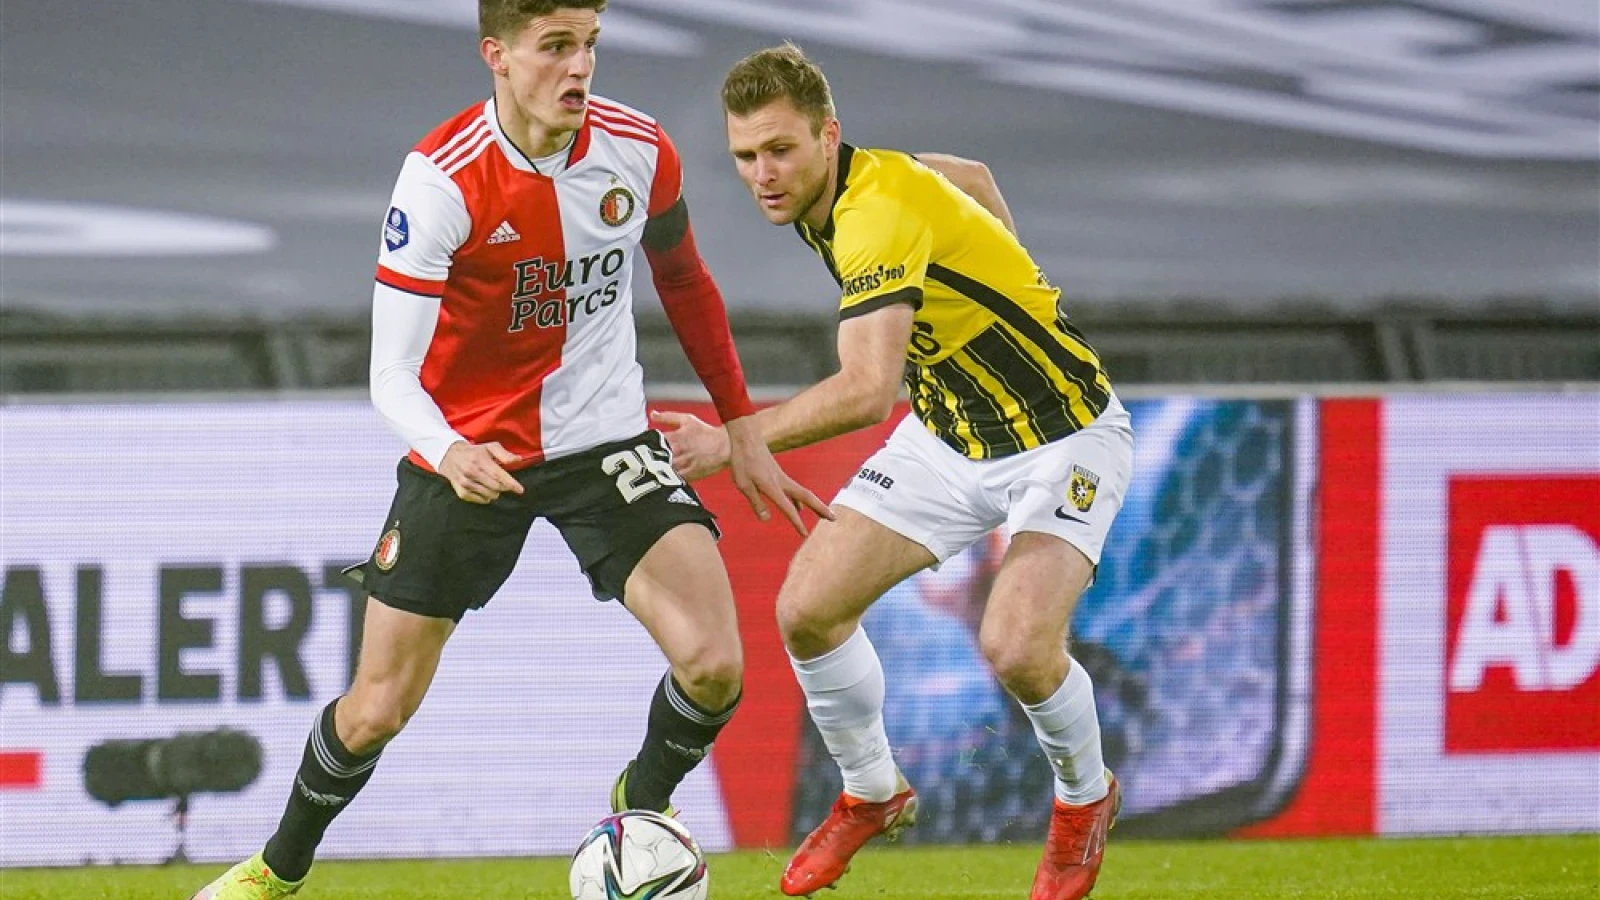 LIVE | Feyenoord - Vitesse 0-1 | Einde wedstrijd